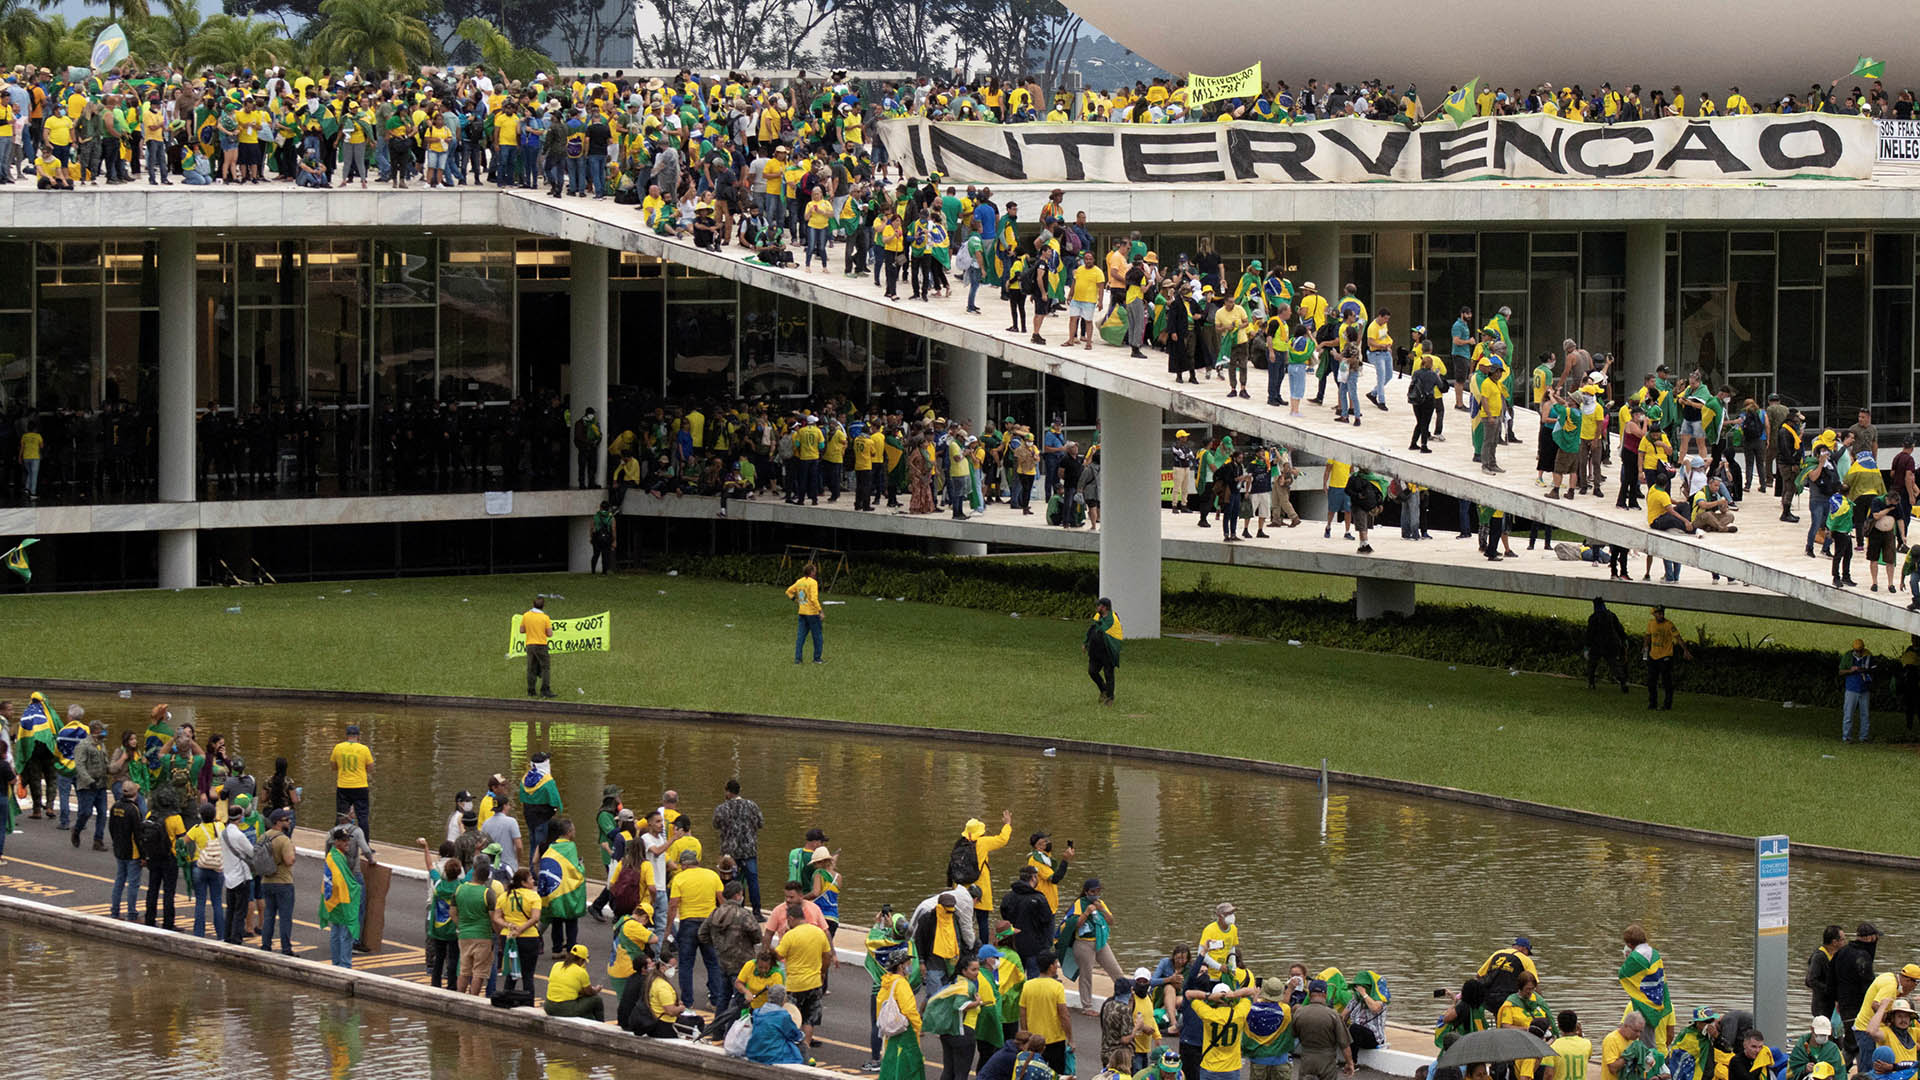 Los militantes bolsonaristas tomaron Brasilia (REUTERS/Antonio Cascio)